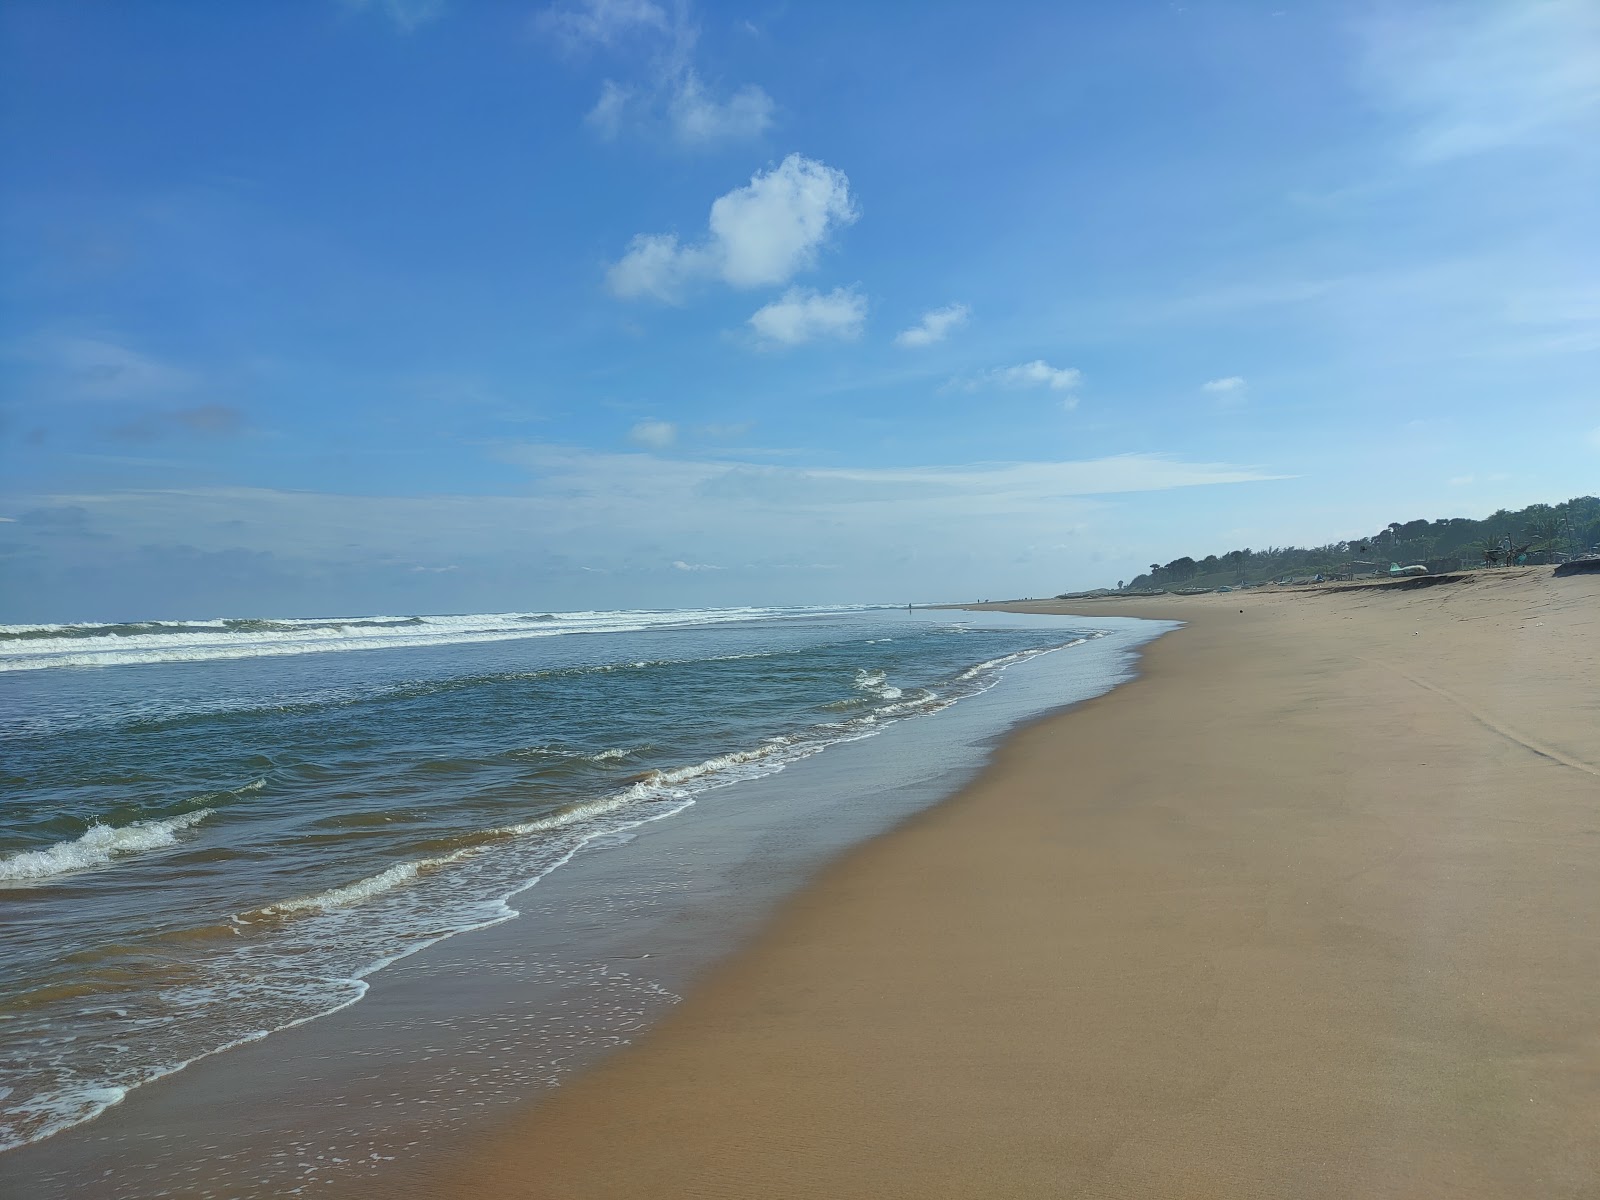 Mogadalapadu Beach'in fotoğrafı parlak ince kum yüzey ile